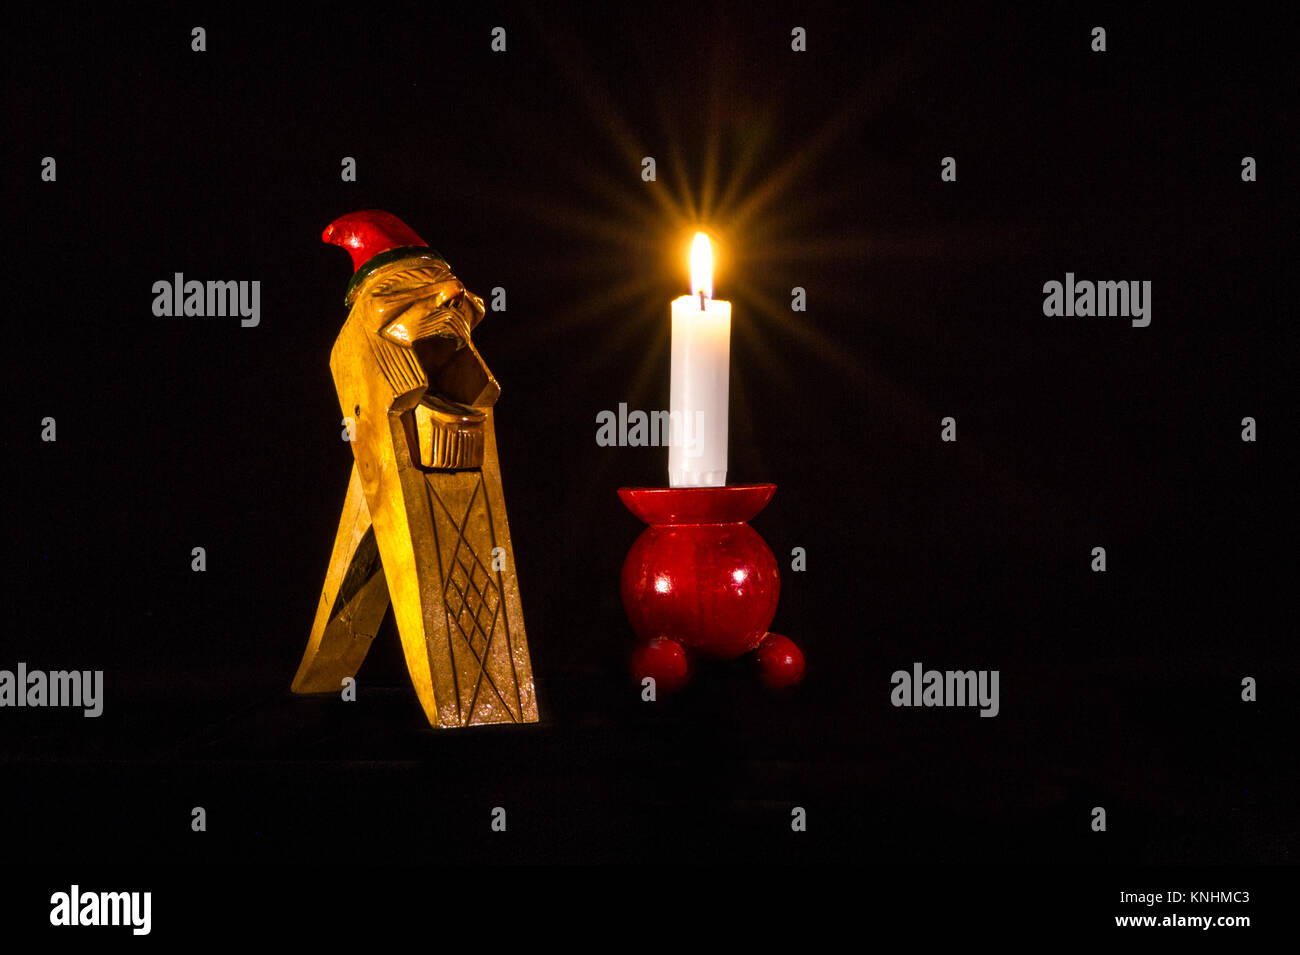 Un noruego Gnome Handcarved Cracker tuerca de madera junto con una luz de una vela en un candelabro de madera roja típica. Foto de stock